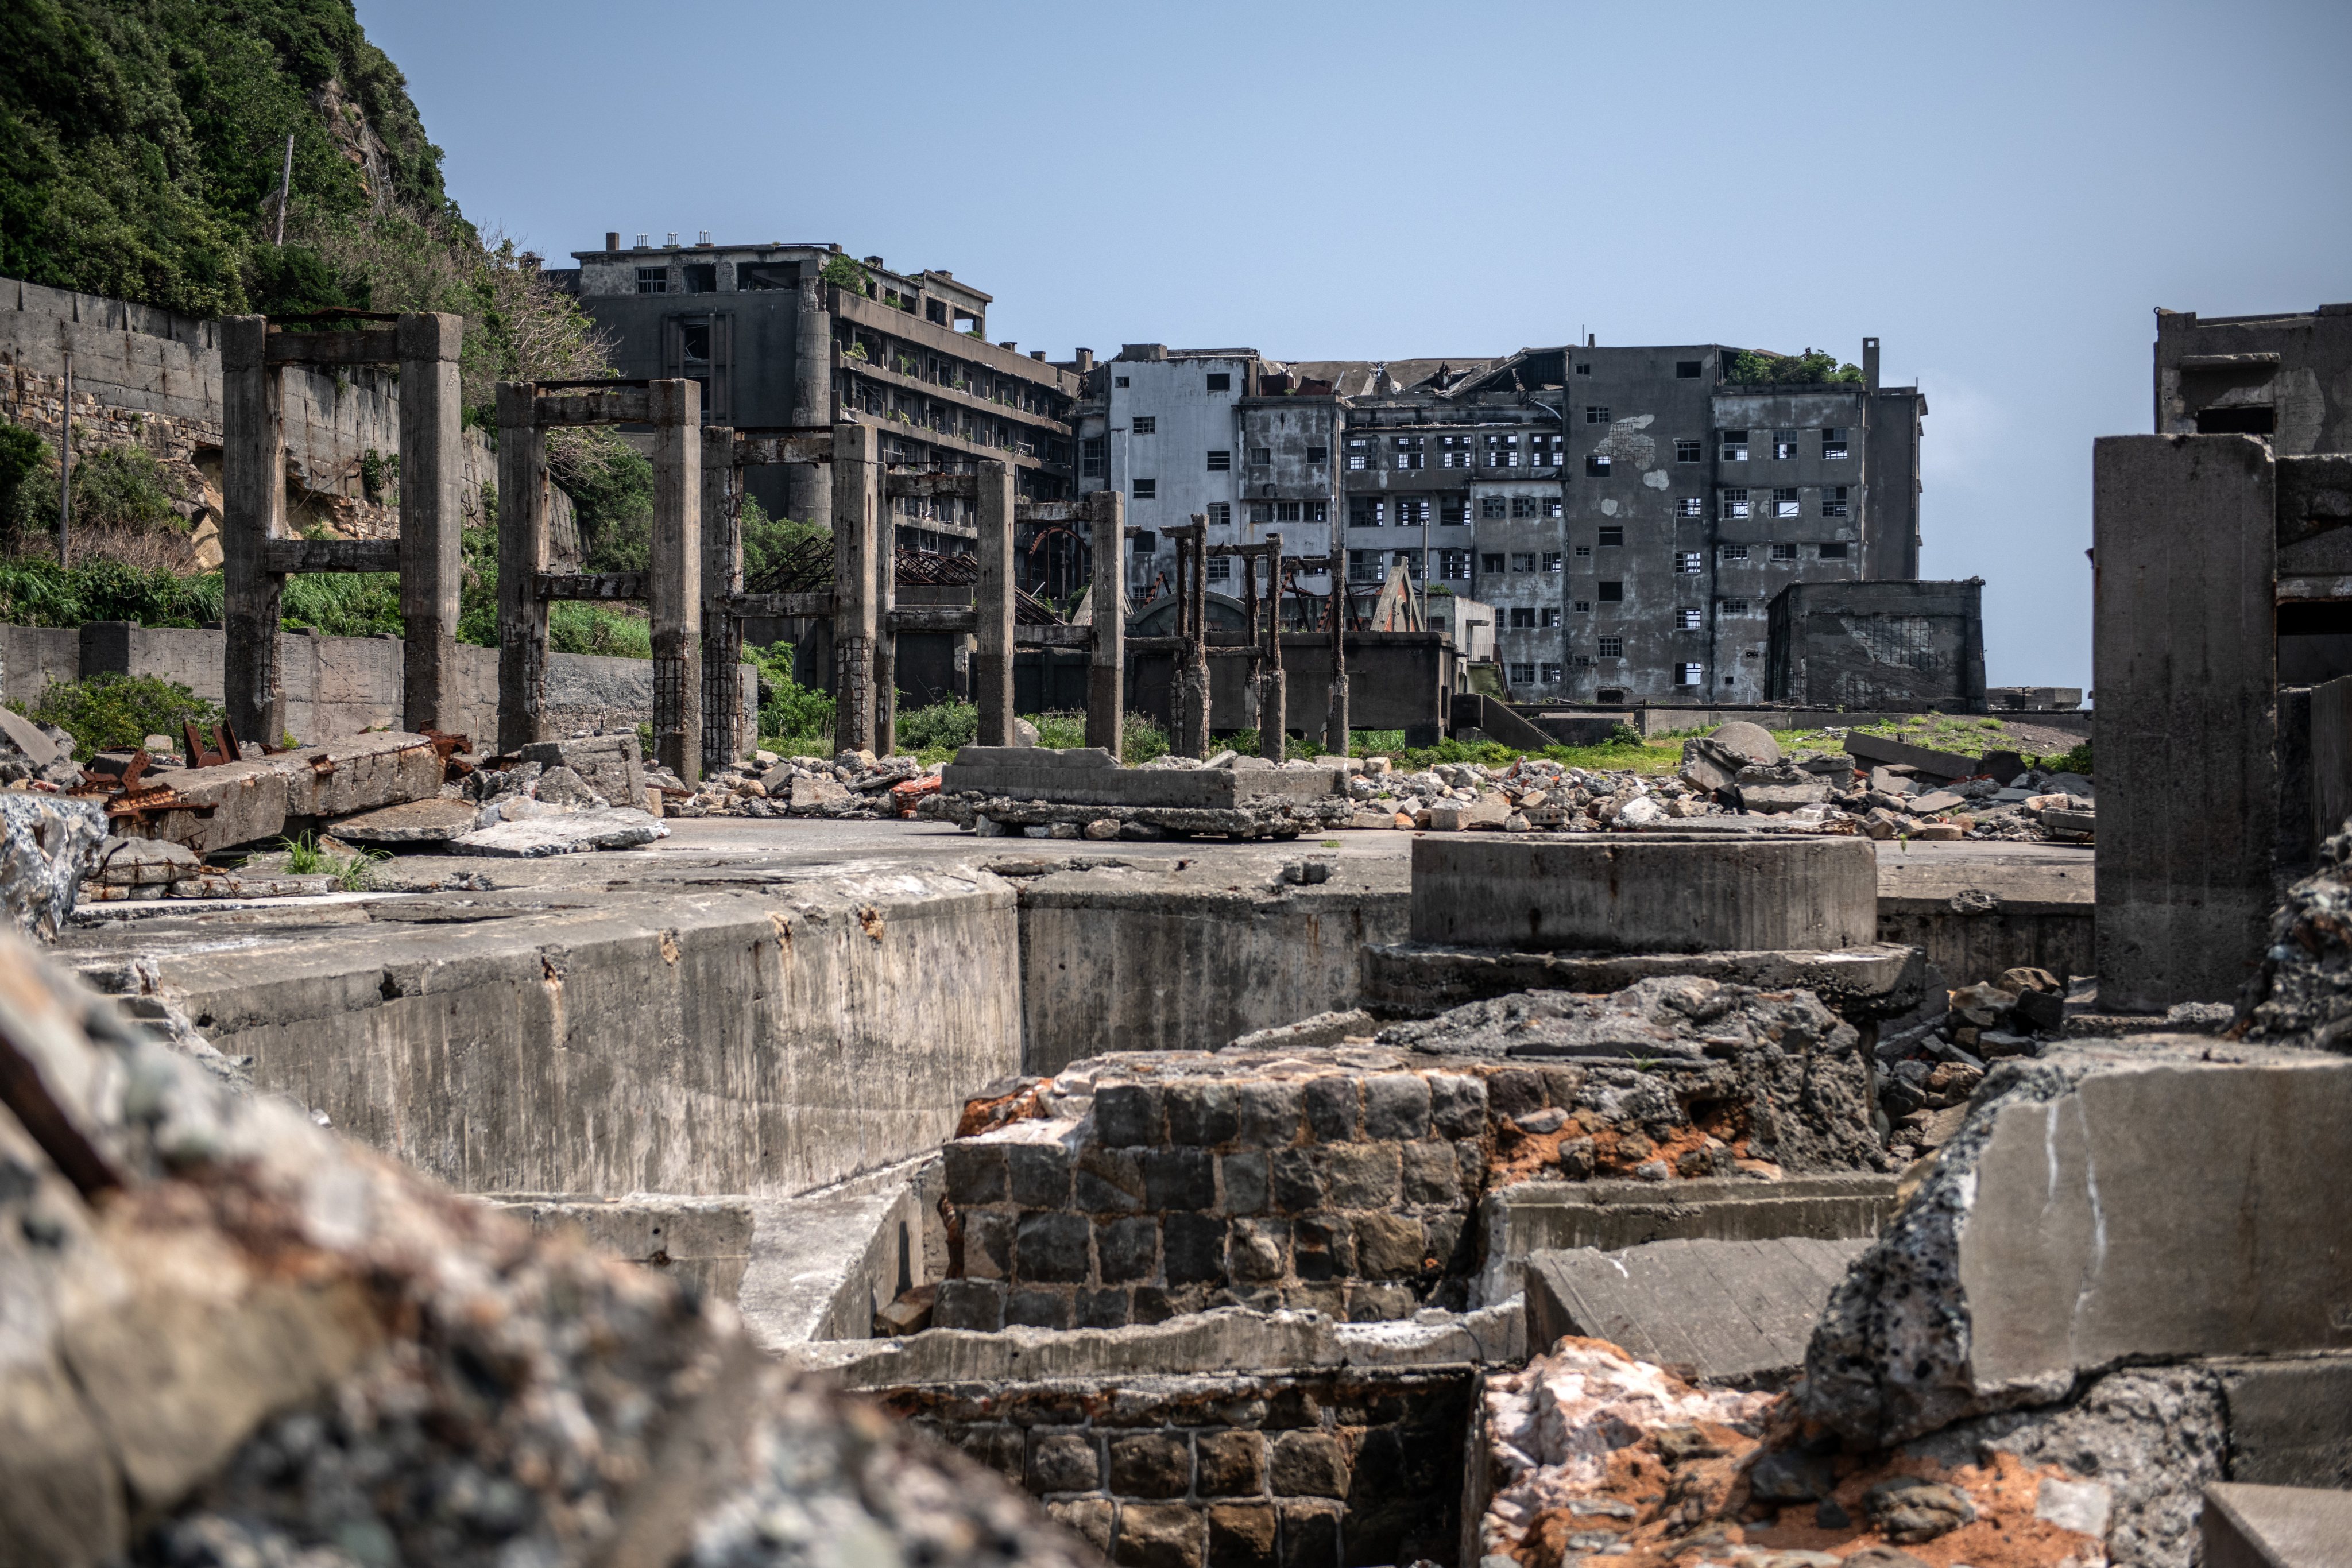 Cidades abandonadas: ilha Hashima, Japão